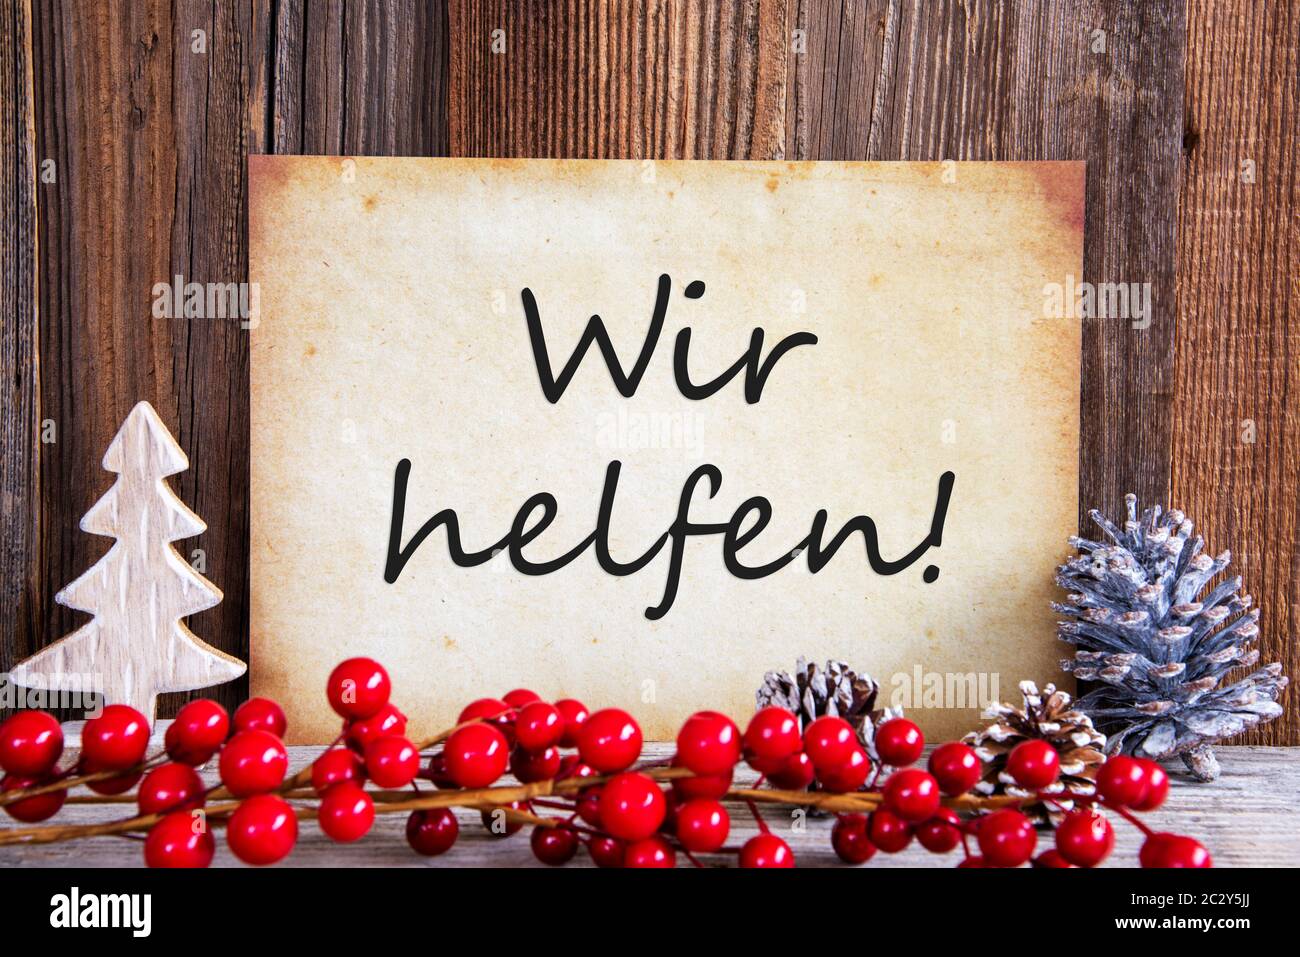 Papier avec texte allemand Wir helfen signifie que nous aider. Décoration de Noël et de fond de bois Banque D'Images